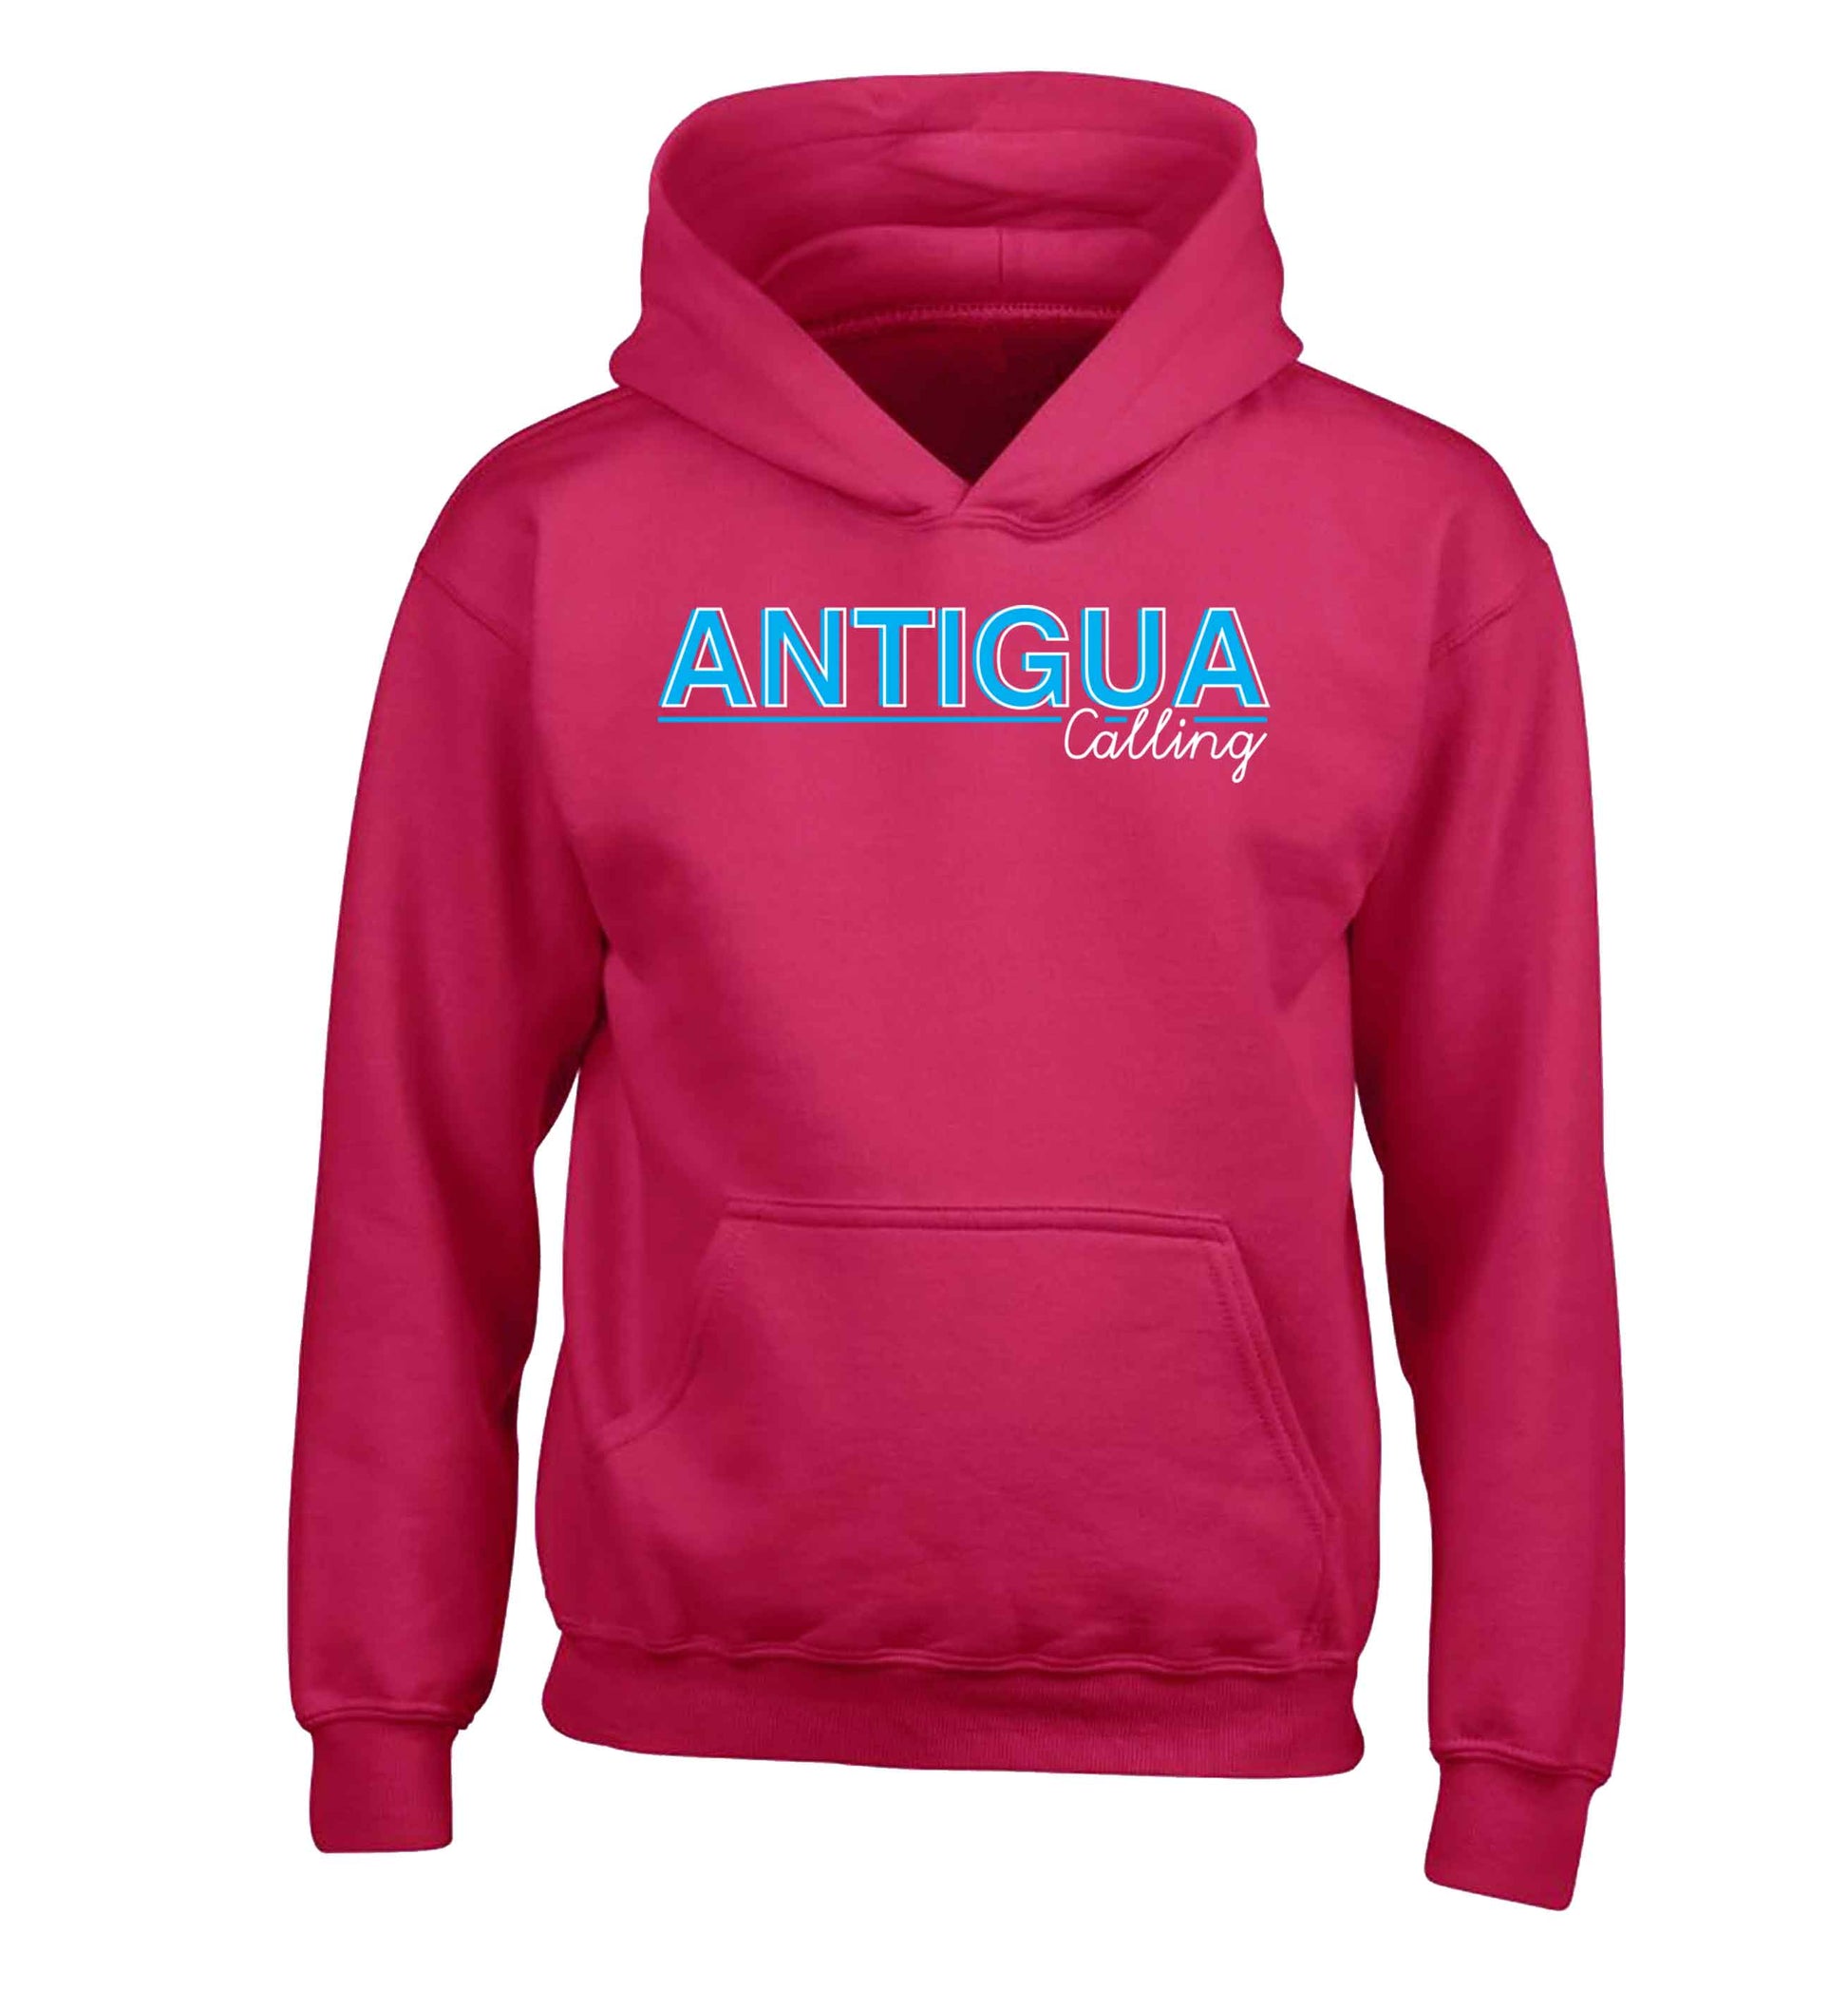 Antigua calling children's pink hoodie 12-13 Years